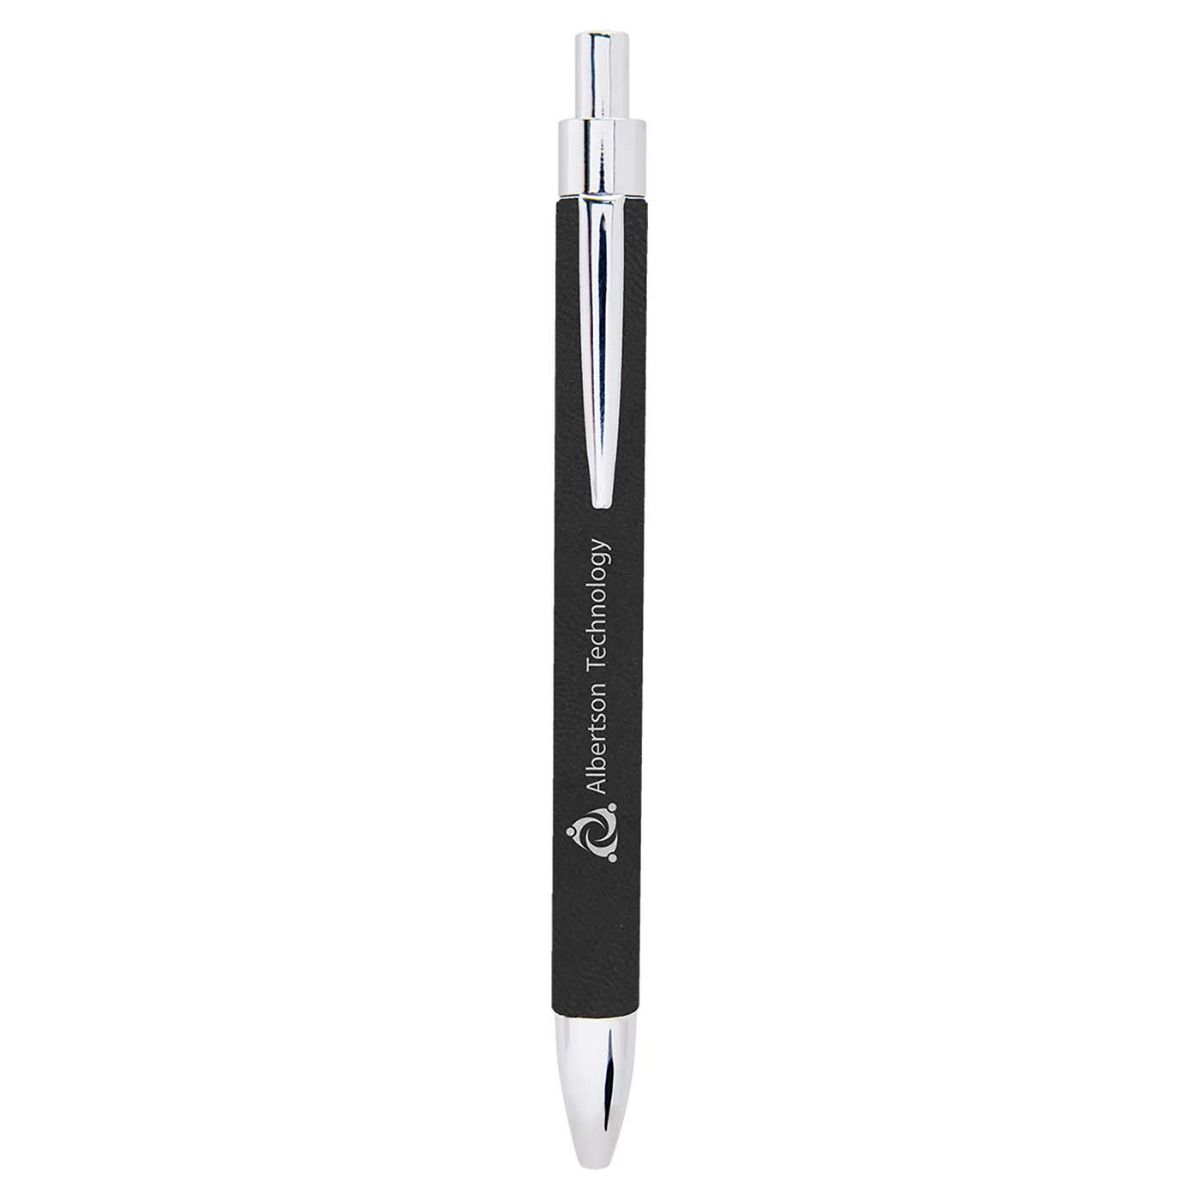 Engravable Metal Pen & Pencil Case